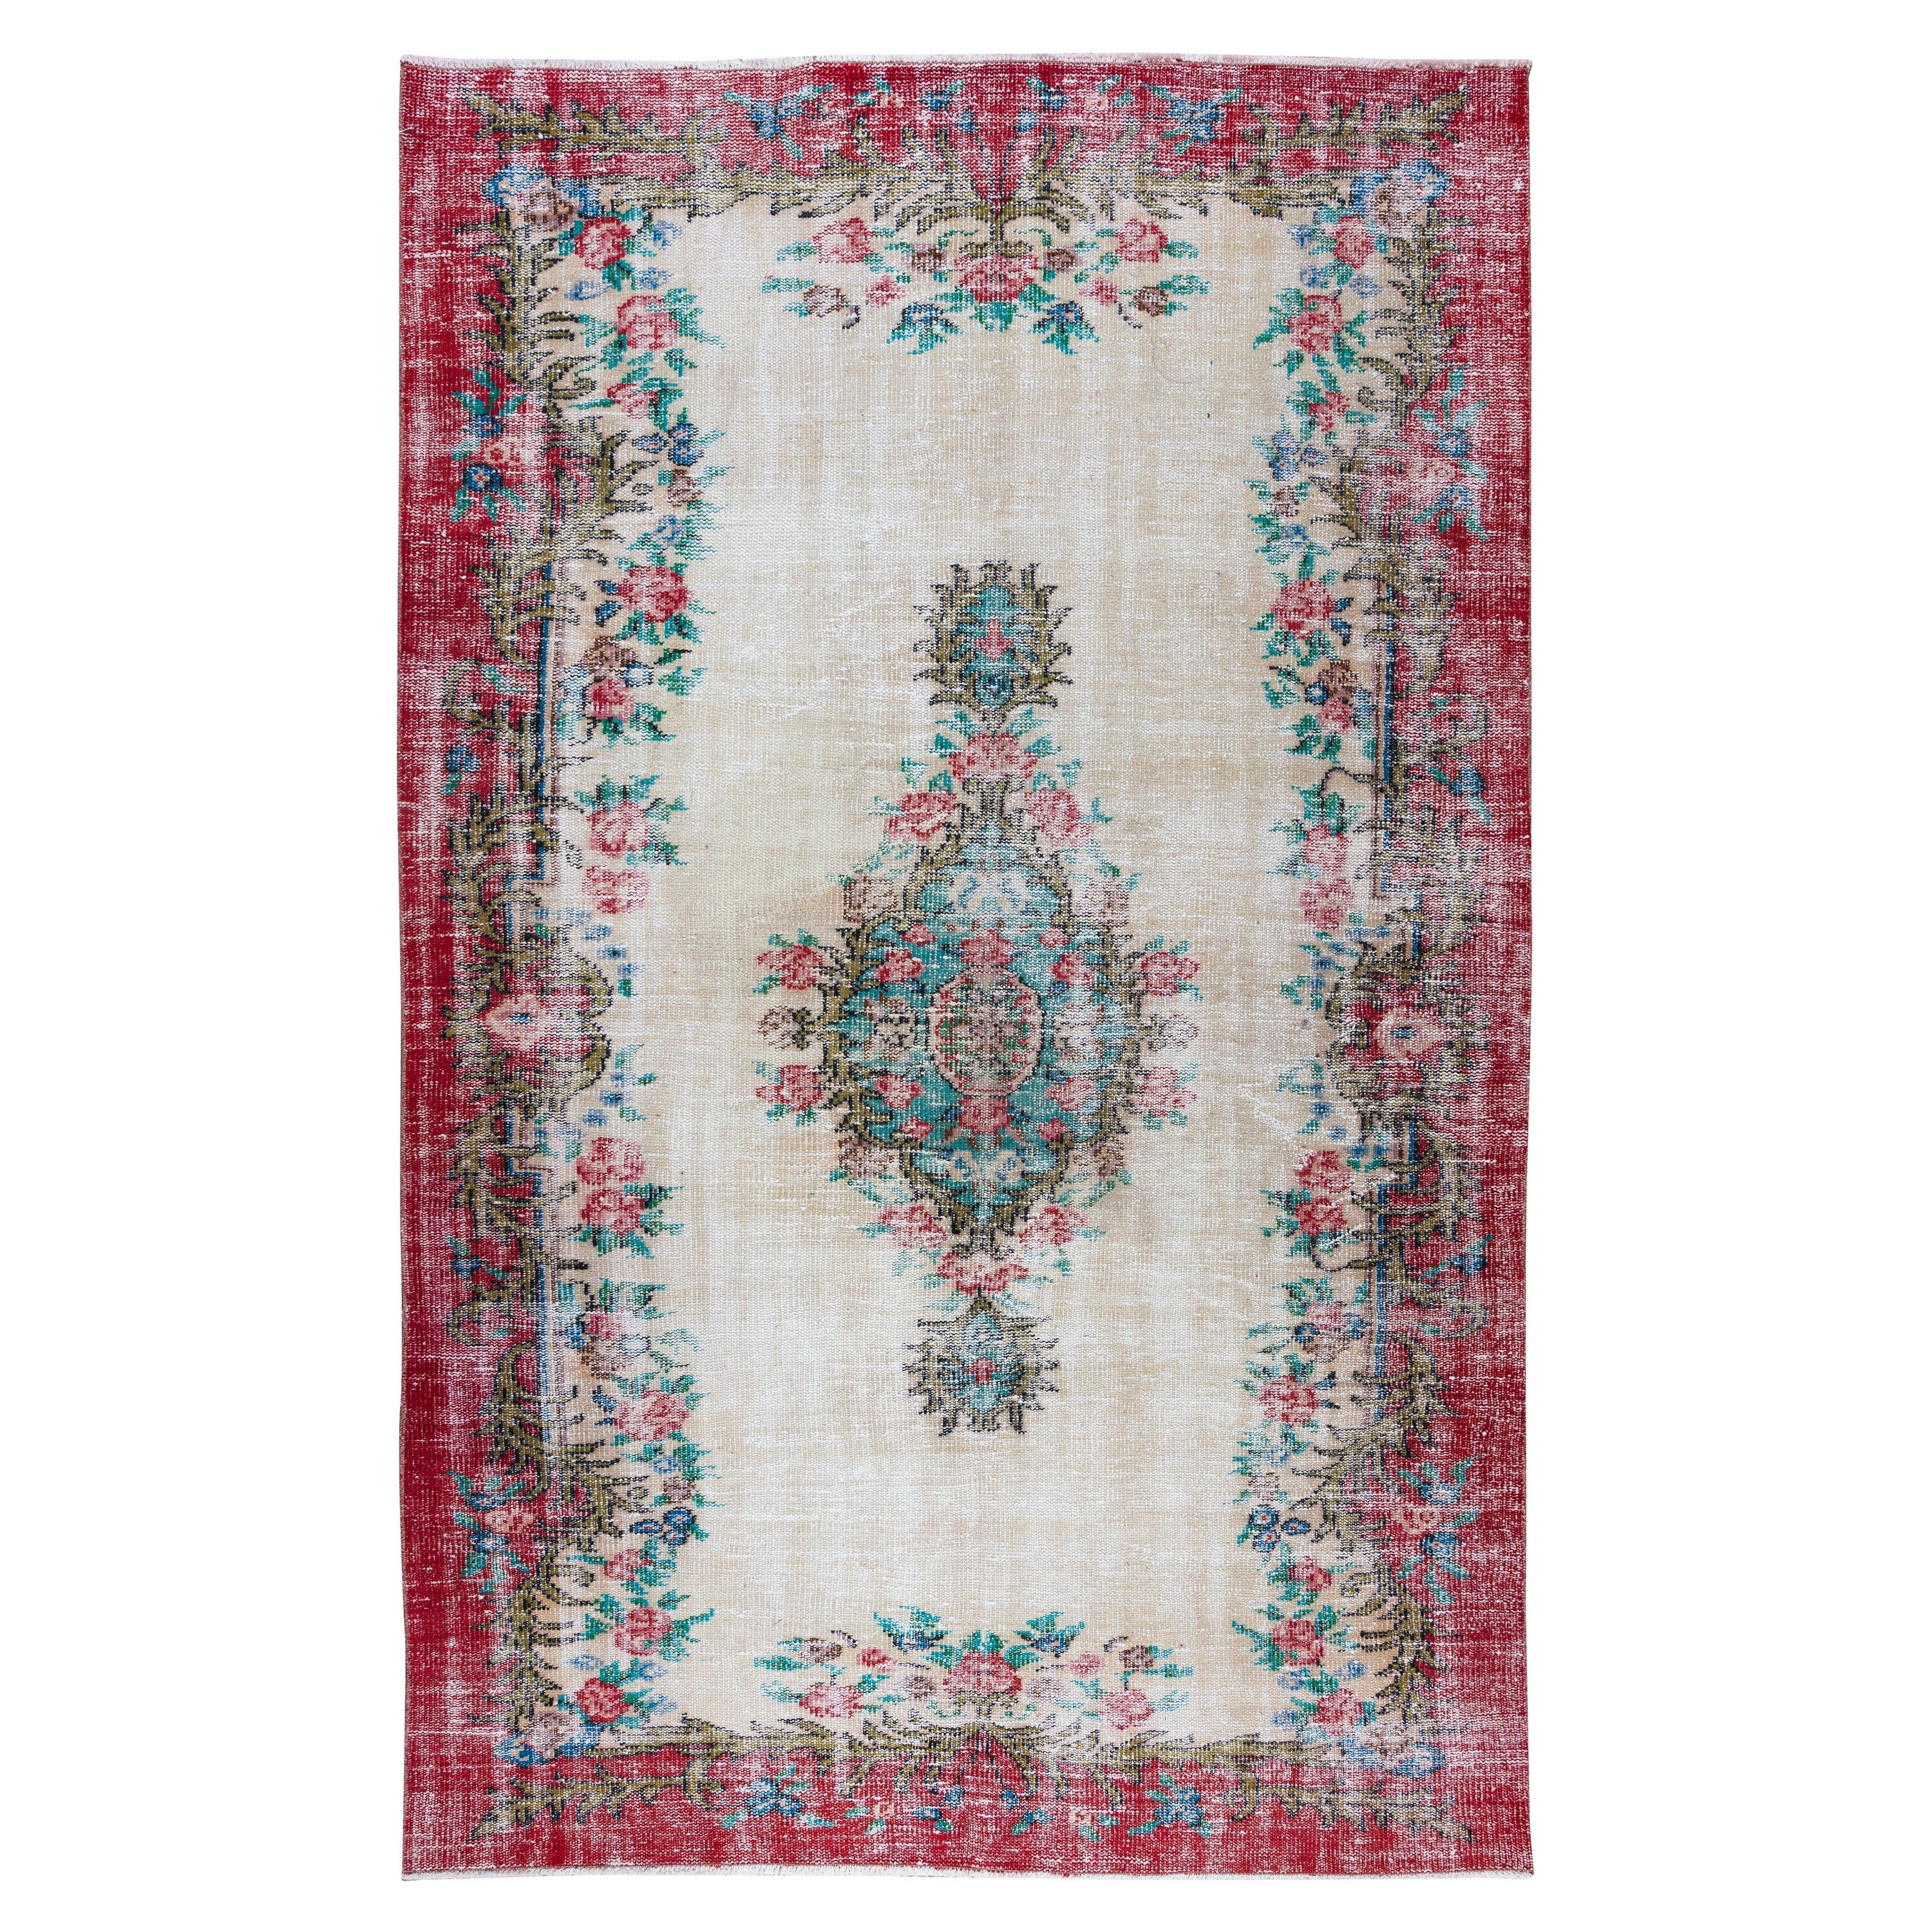 5.6x8.8 Ft Handgefertigter türkischer Teppich mit Rosen, Vintage-Teppich im Blumenmuster mit Blumenmuster